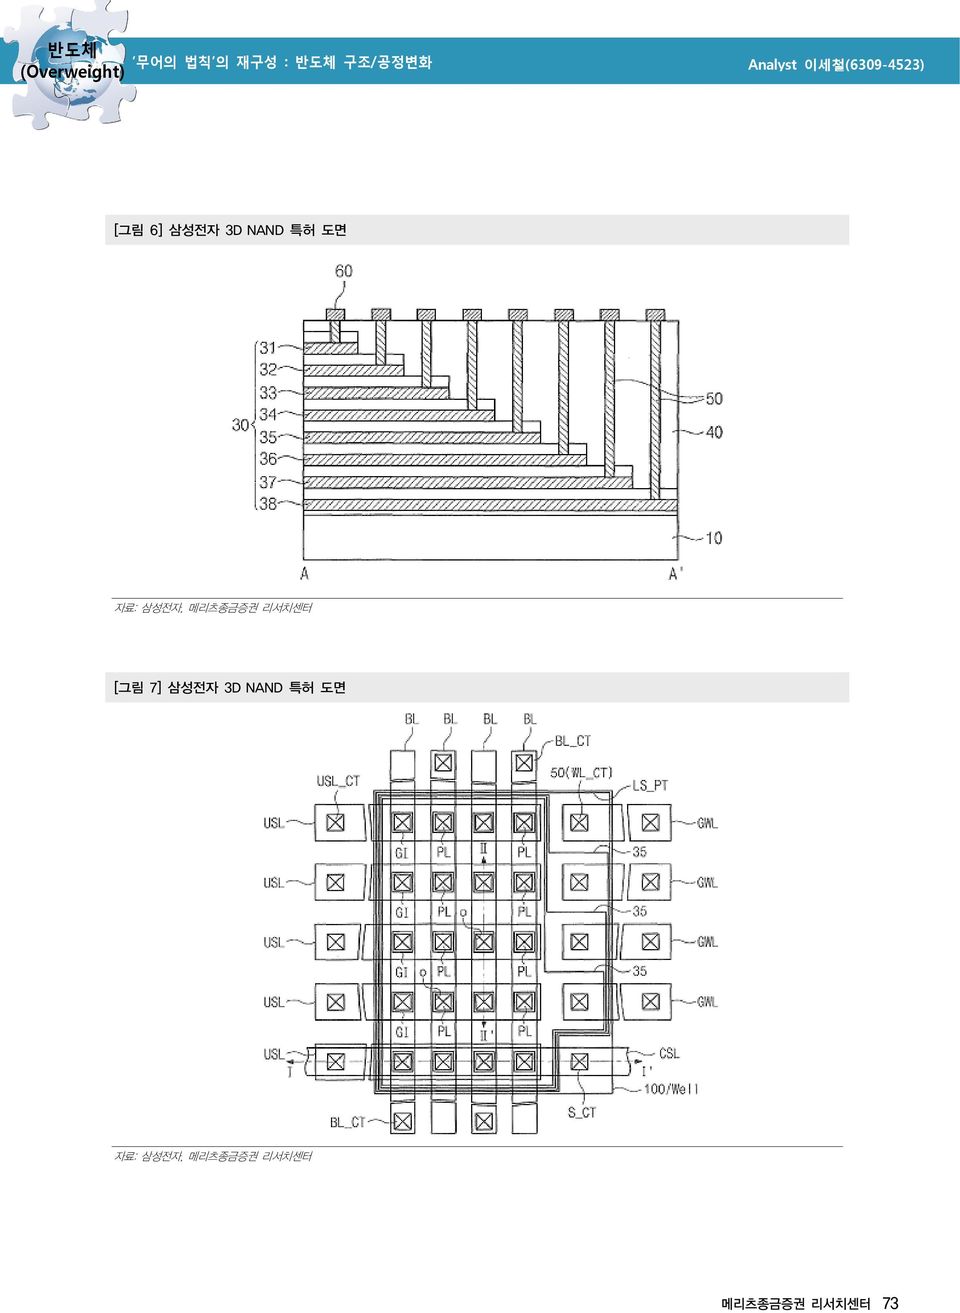 7] 삼성전자 3D NAND 특허 도면 자료: